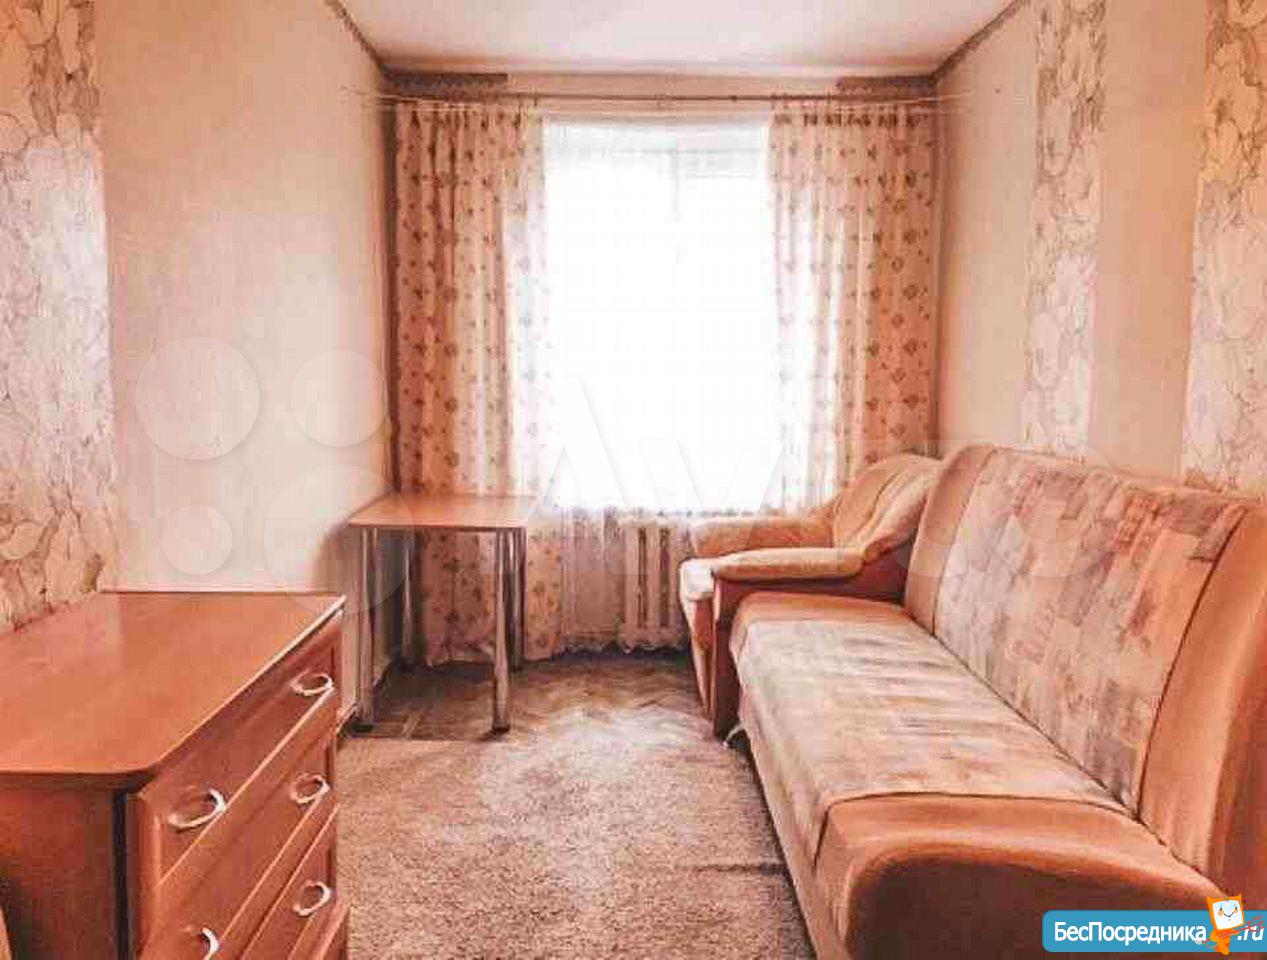 Хочу купить комнату. Комната в коммуналке. Комната в Петербурге. Самую дешевую комнату коммуналка. Самая дешевая комната.